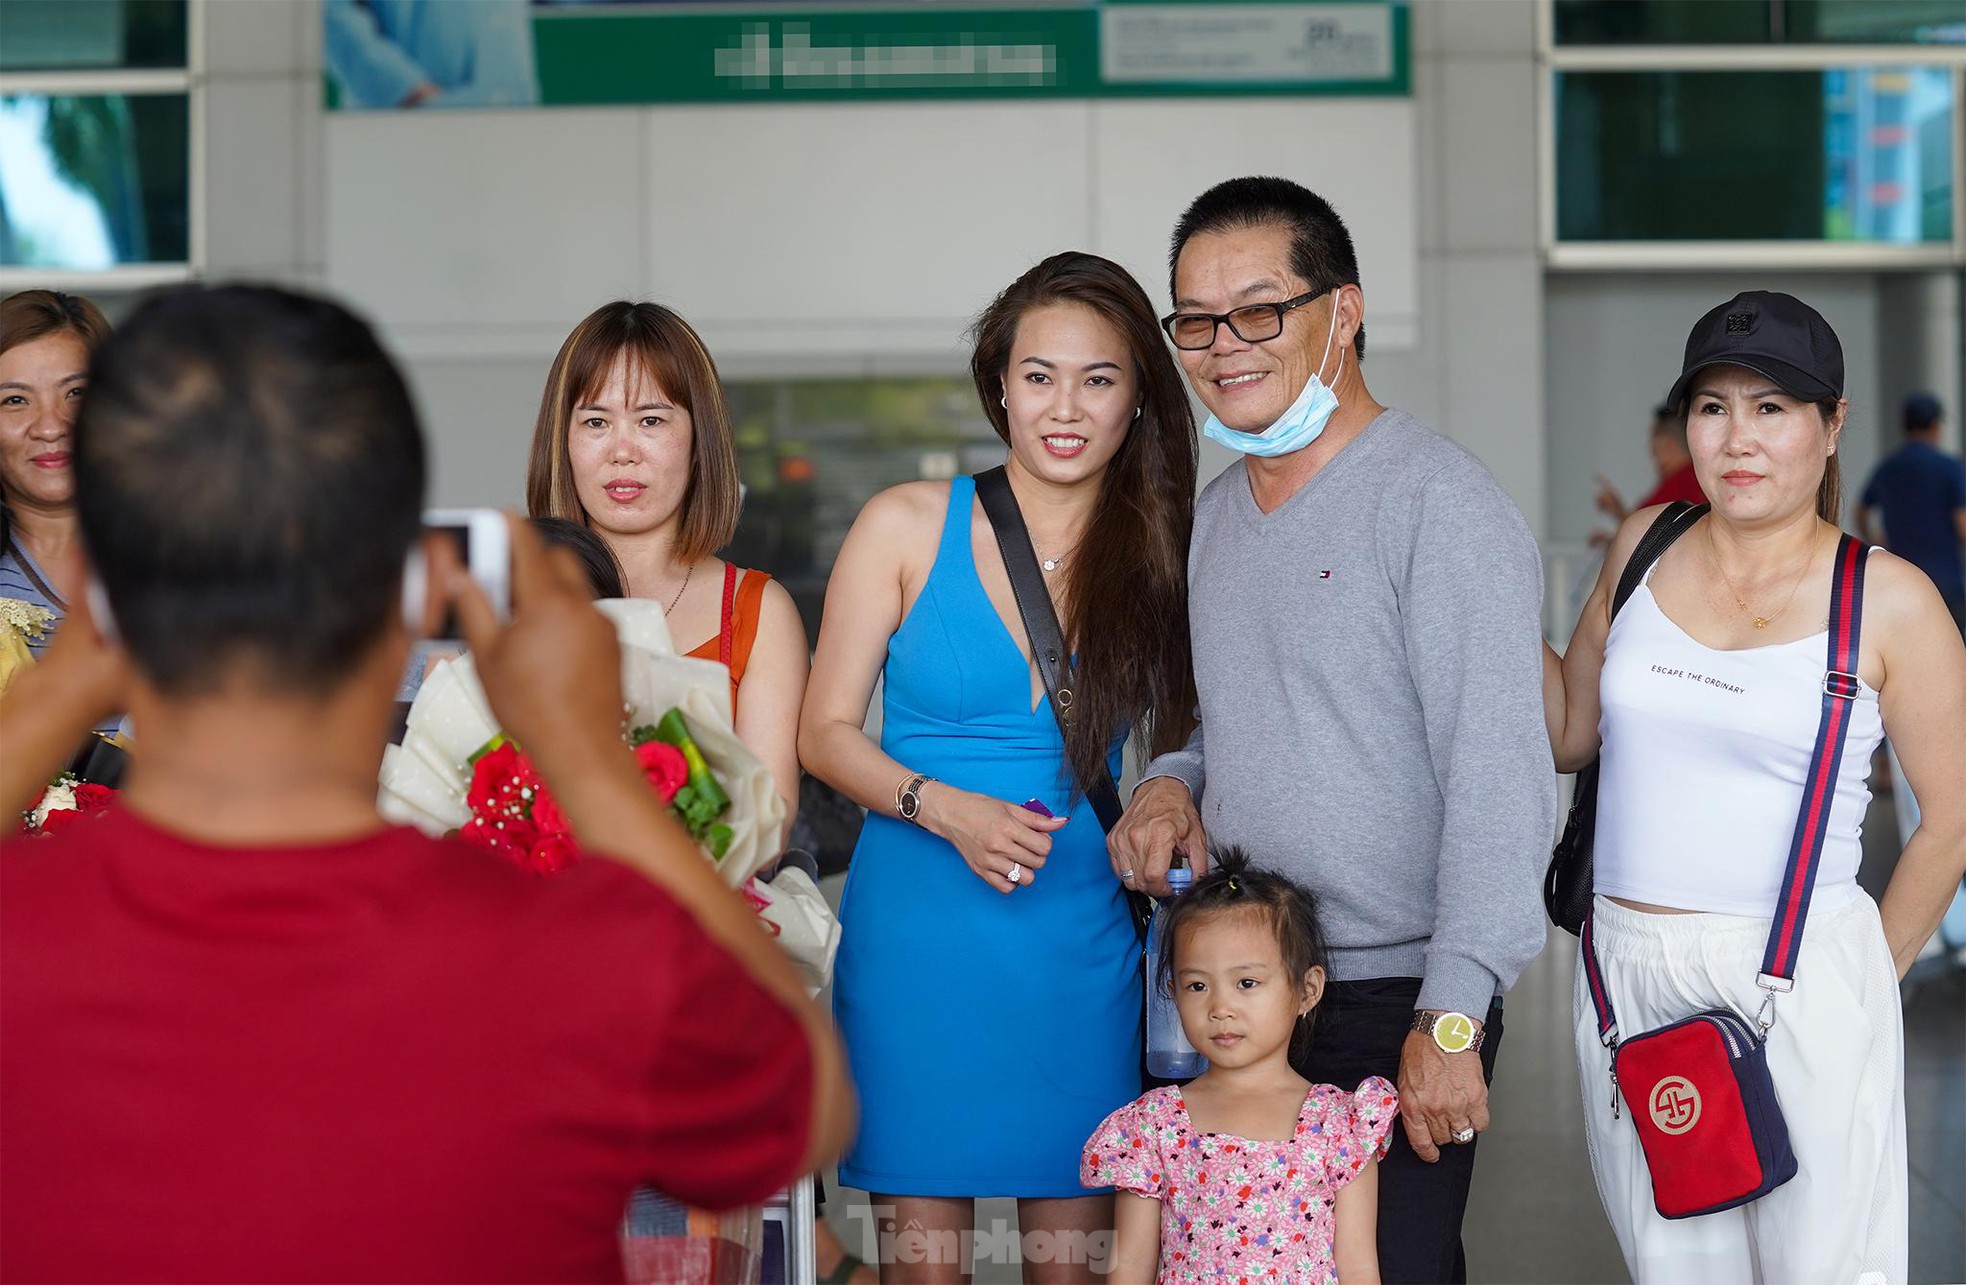 Vỡ òa cảm xúc tại sân bay Tân Sơn Nhất trong ngày đầu mở lại đường bay quốc tế - Ảnh 3.